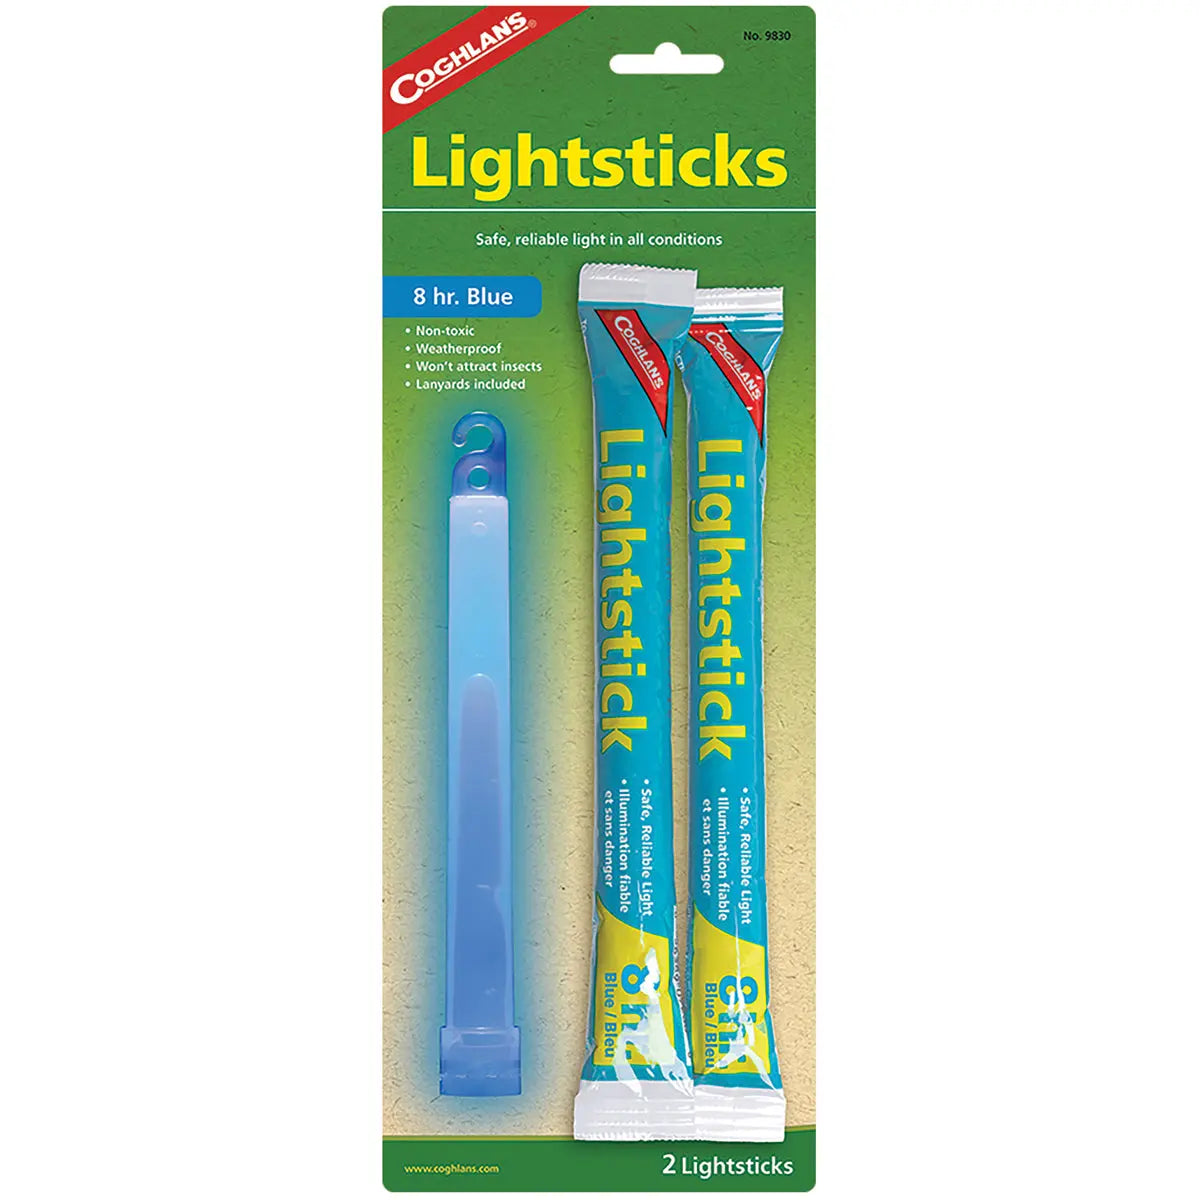 Coghlan's Lightsticks, 8 hr. Blue (2 Pack), Weatherpoof, Emergency Survival Aid Coghlan's